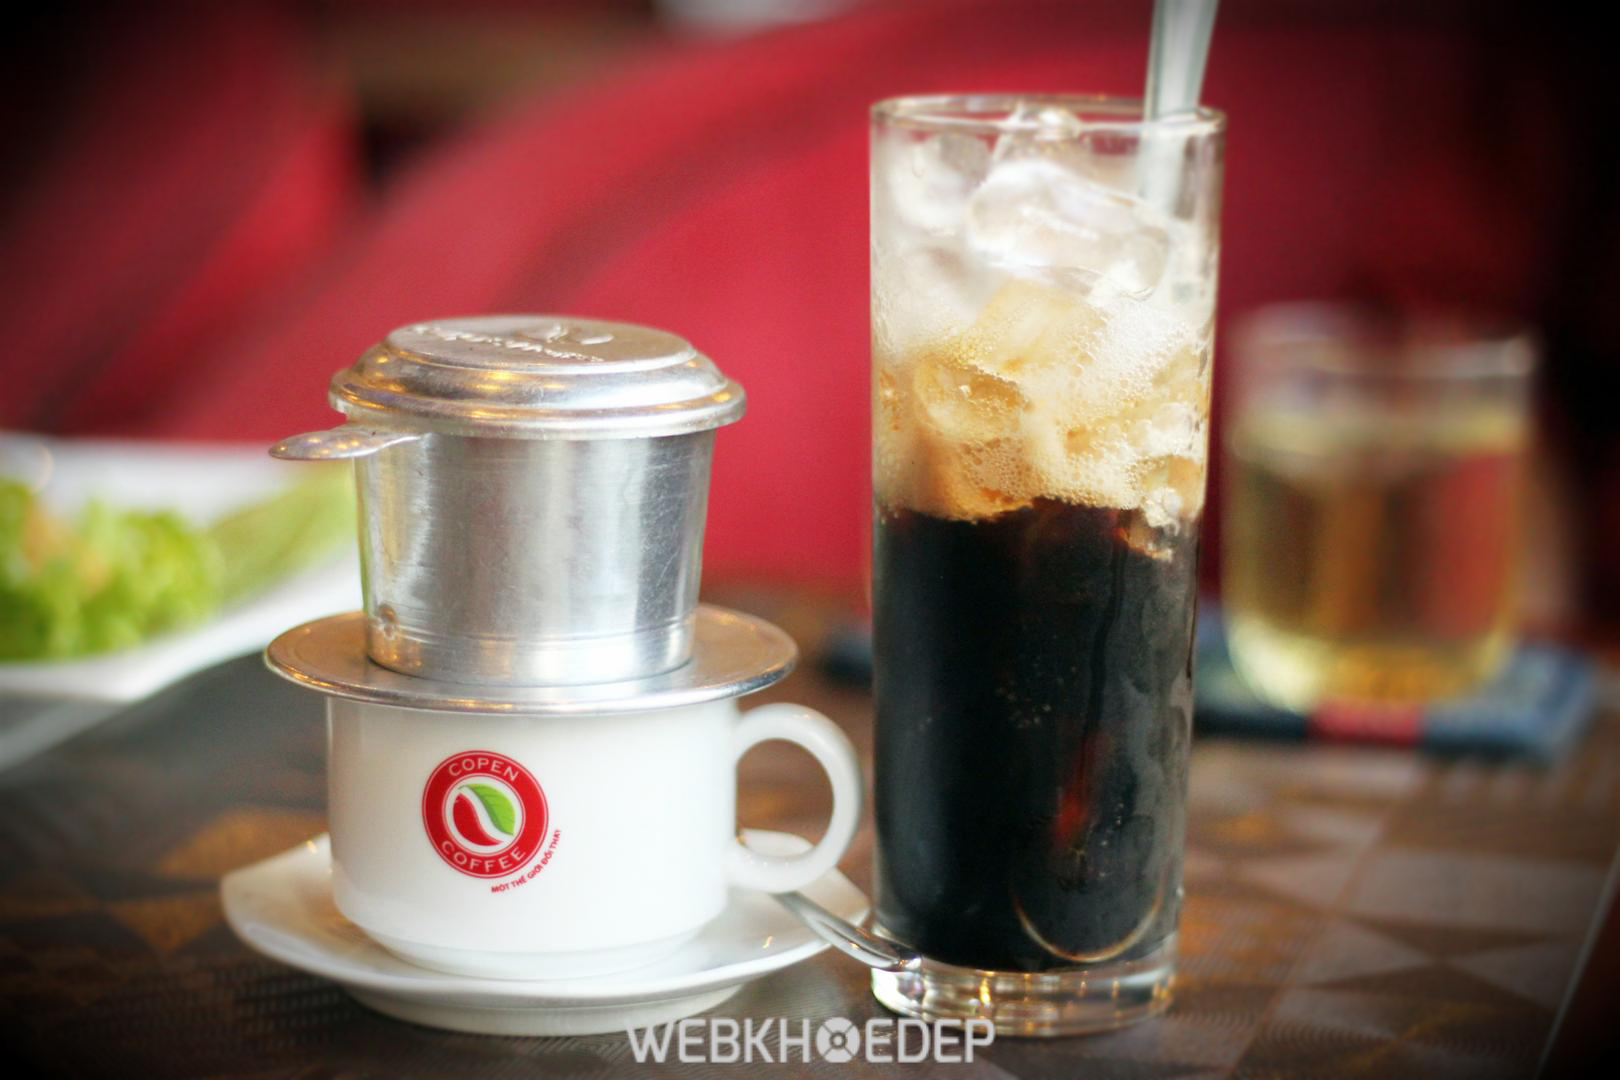 Uống cafe đen là cách giảm cân hiệu quả. Tuy nhiên, bạn không nên quá lạm dụng nếu không sẽ bị nóng và ảnh hưởng đến dạ dày